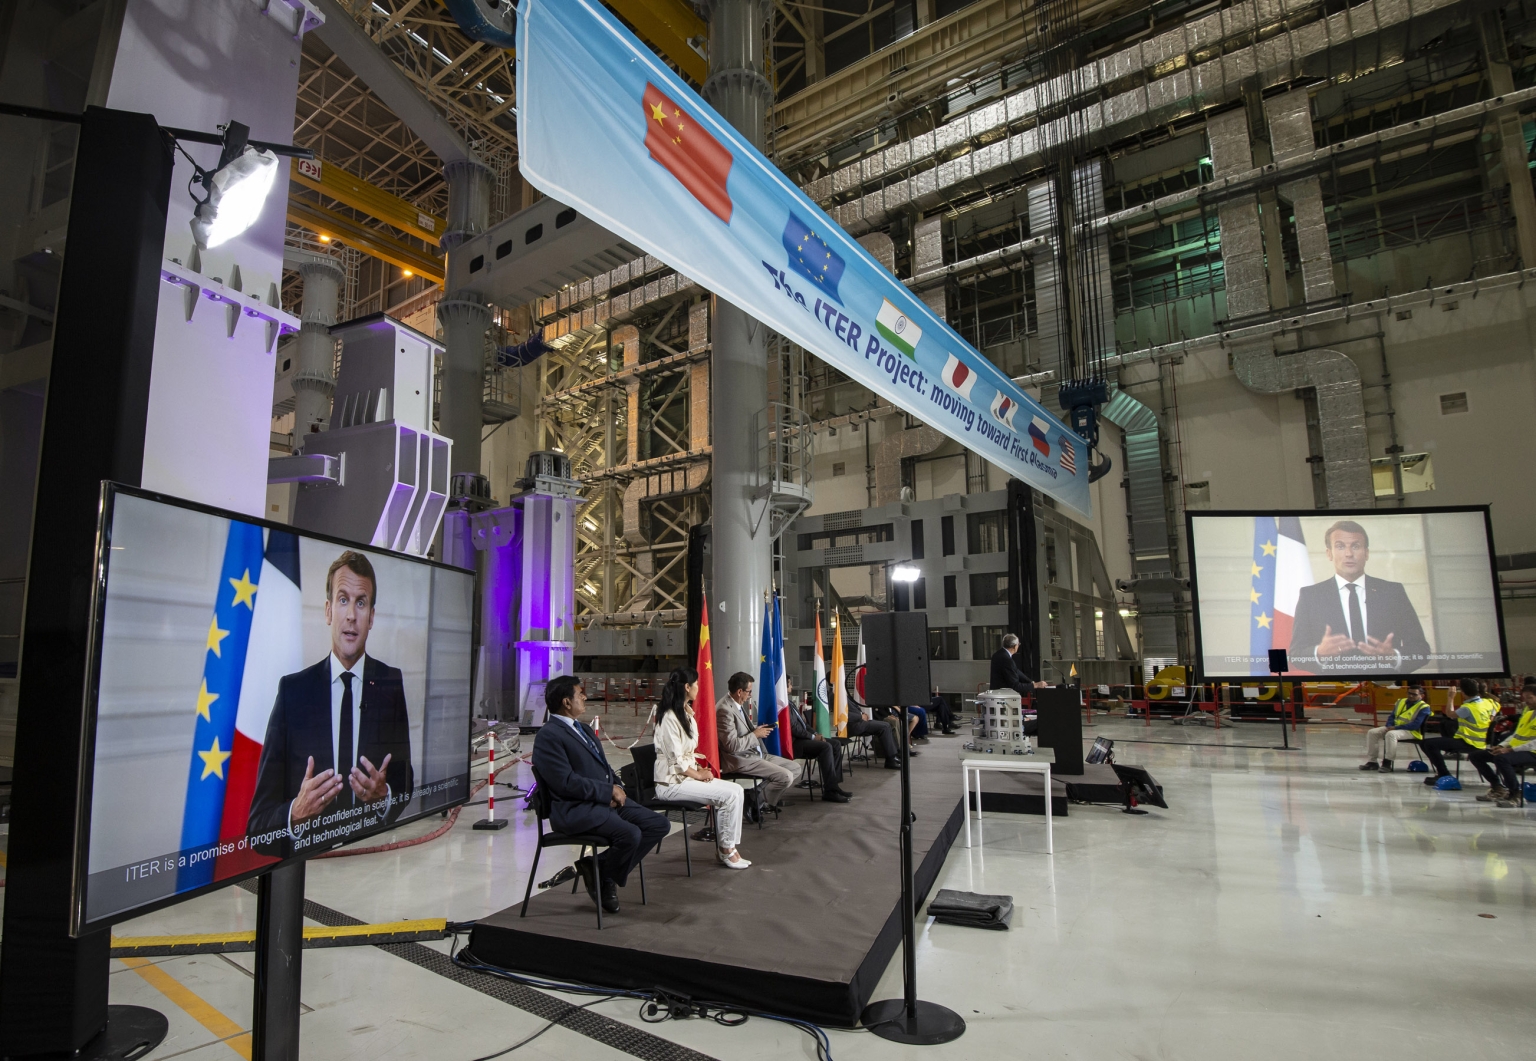 «Iter verspricht Zukunft und Vertrauen in die Wissenschaft», sagte der französische Präsident Emmanuel Macron in einer Video-Botschaft anlässlich der Lancierung der Montagephase des Iters. Das Projekt sei schon jetzt eine wissenschaftliche und technologische Meisterleistung.